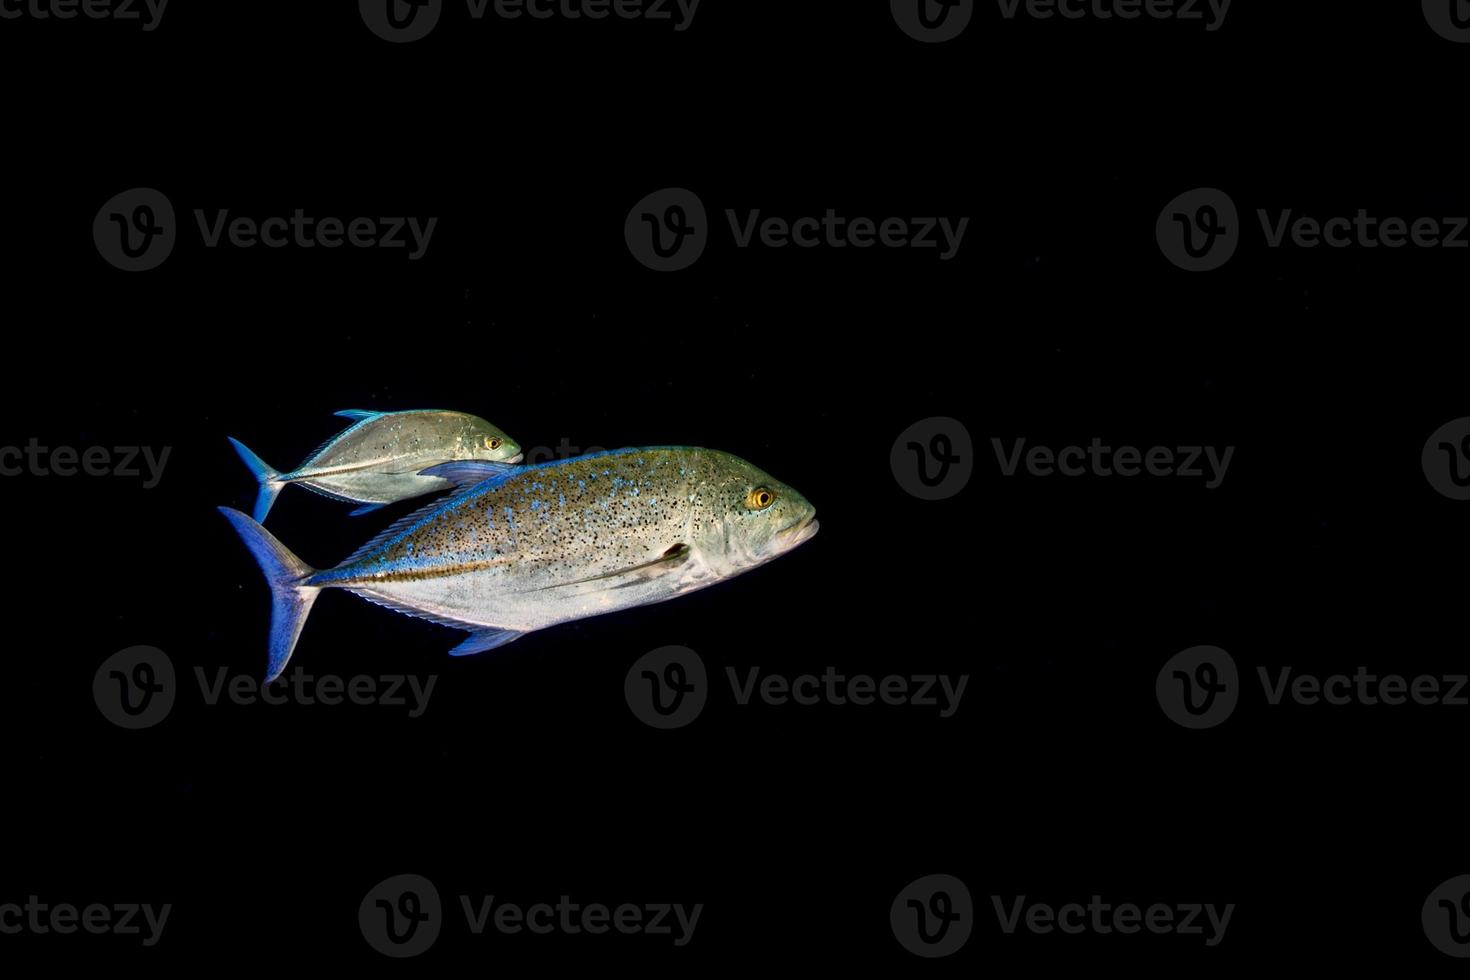 Giant trevally tuna caranx fish photo